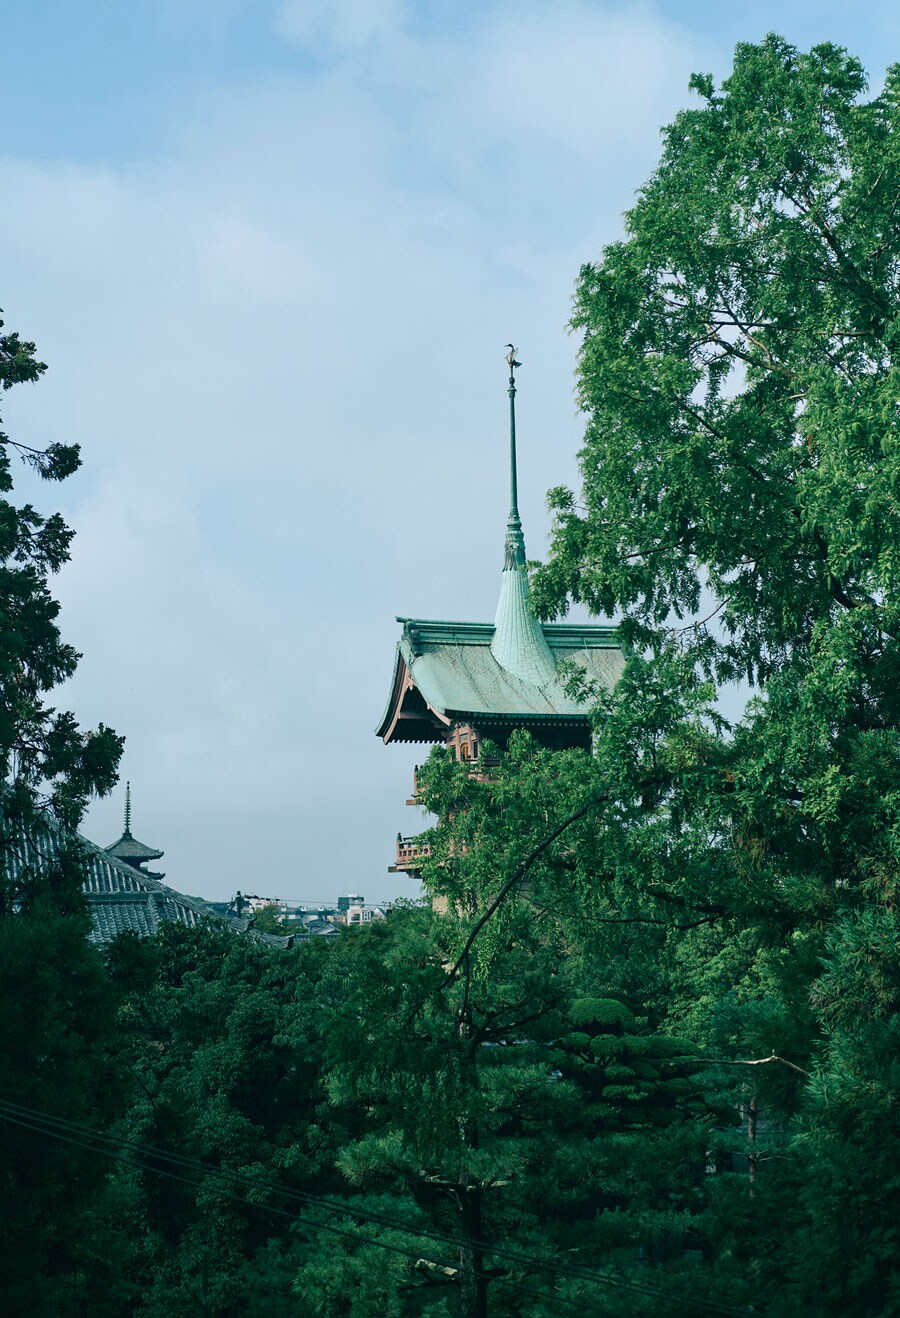 【長楽館】本館3階からの眺め。手前の塔は、大雲院の祇園閣。